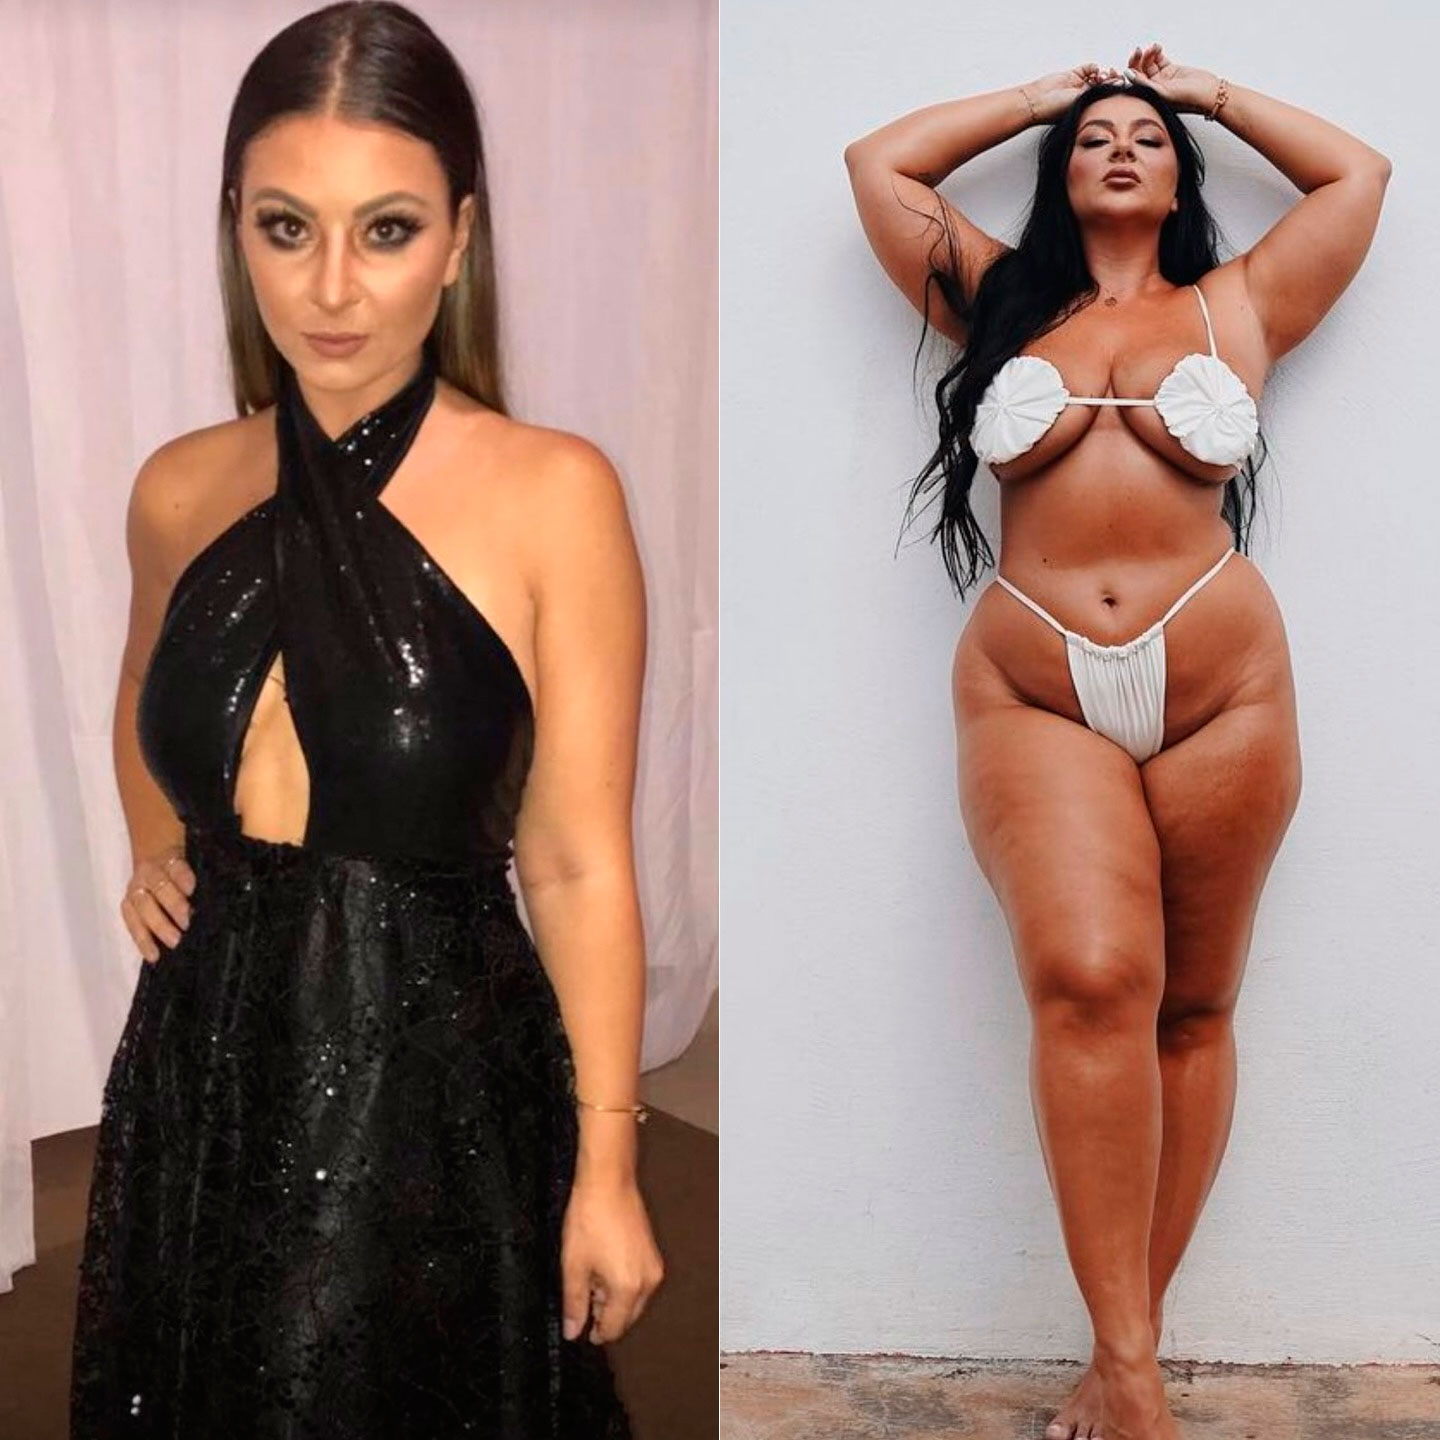 Letticia Munniz contou que ficou doente por buscar “corpo padrão” - Foto: Reprodução/ Instagram@letticiamunniz